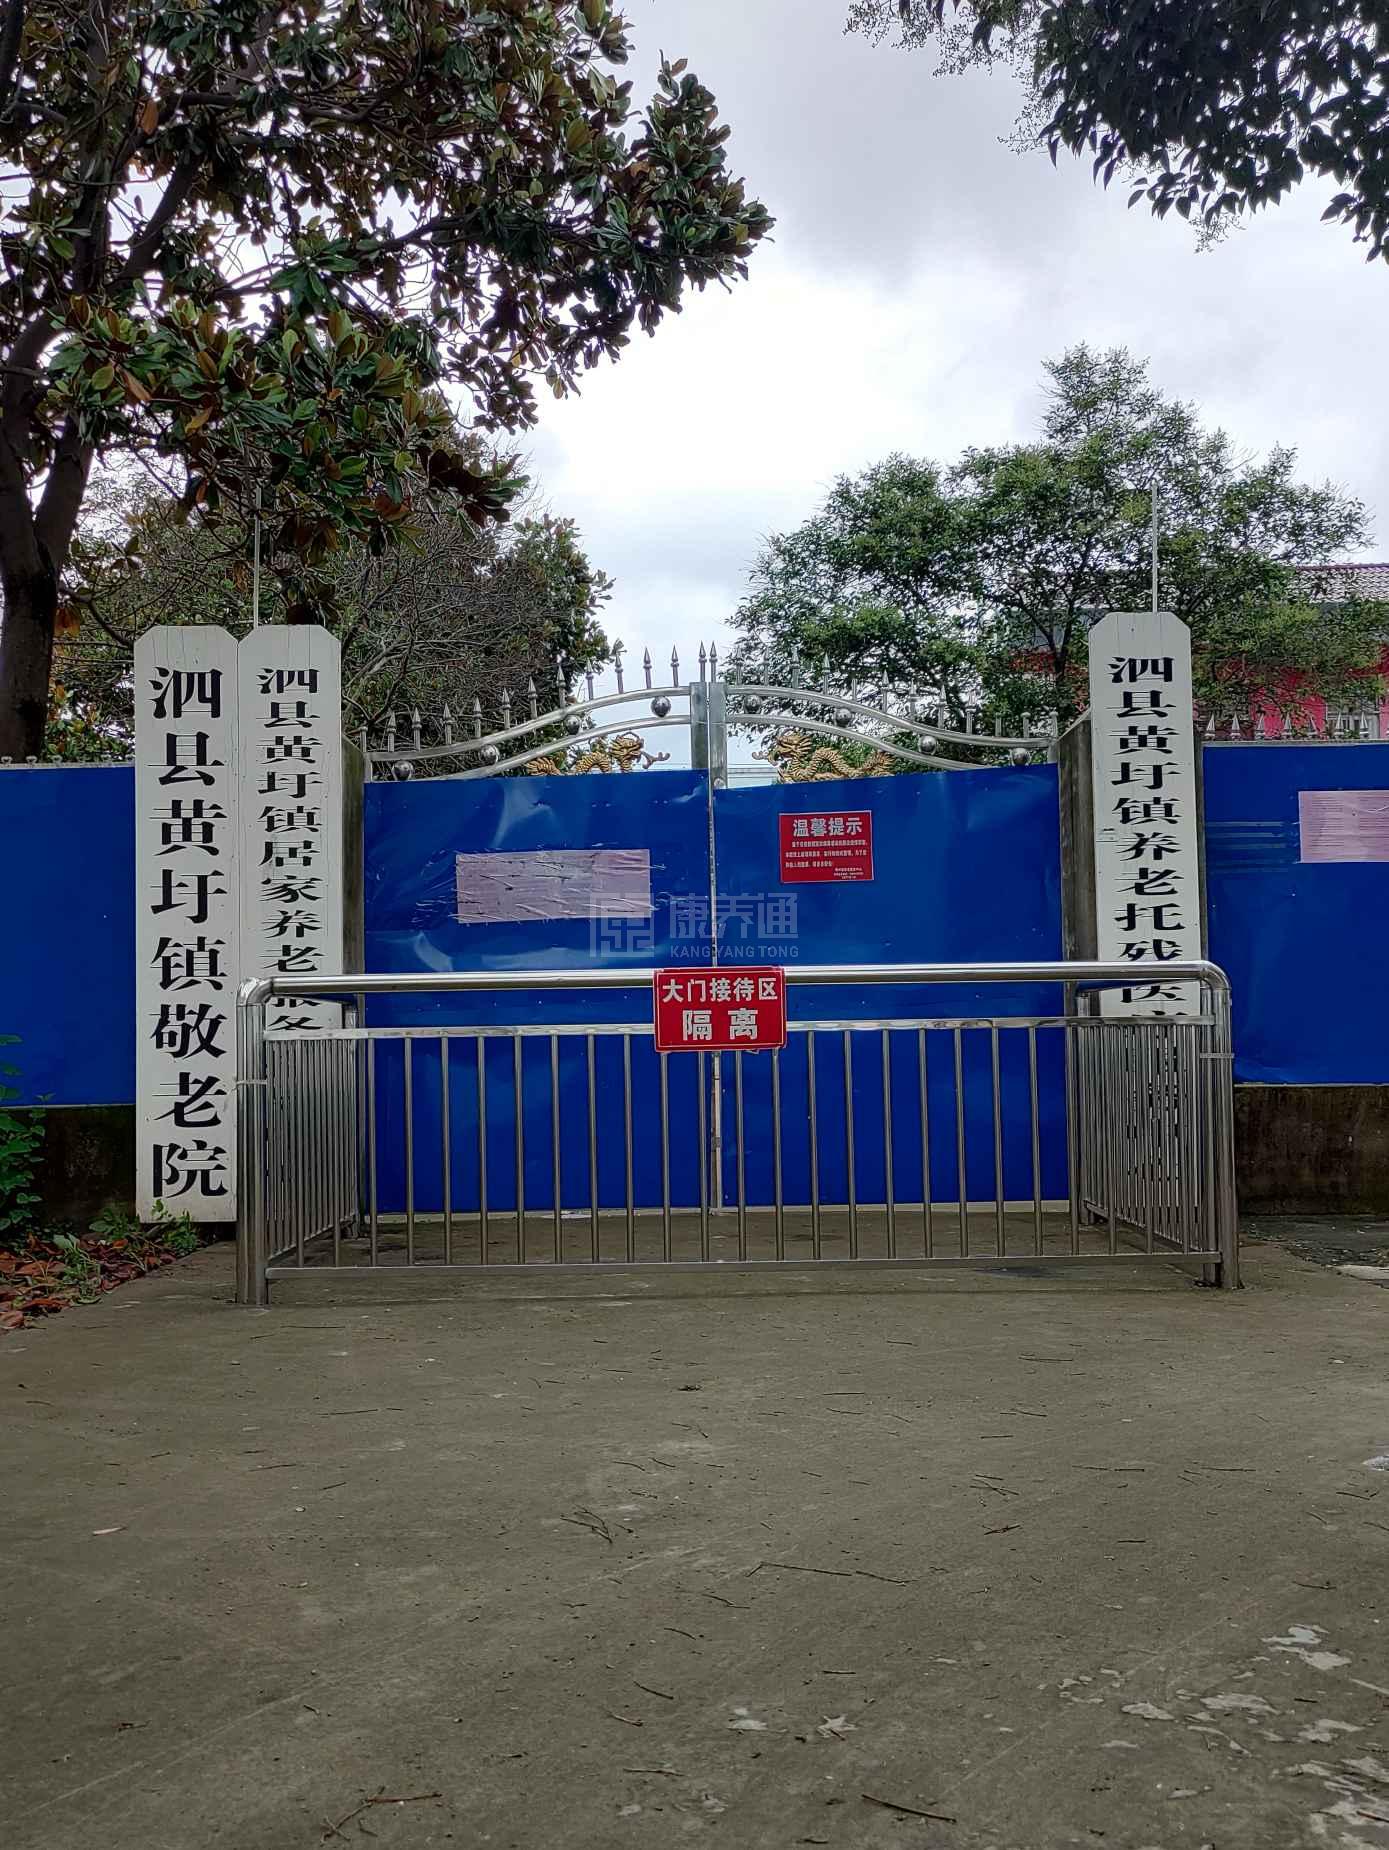 泗县黄圩镇养老服务中心服务项目图3惬意的环境、感受岁月静好